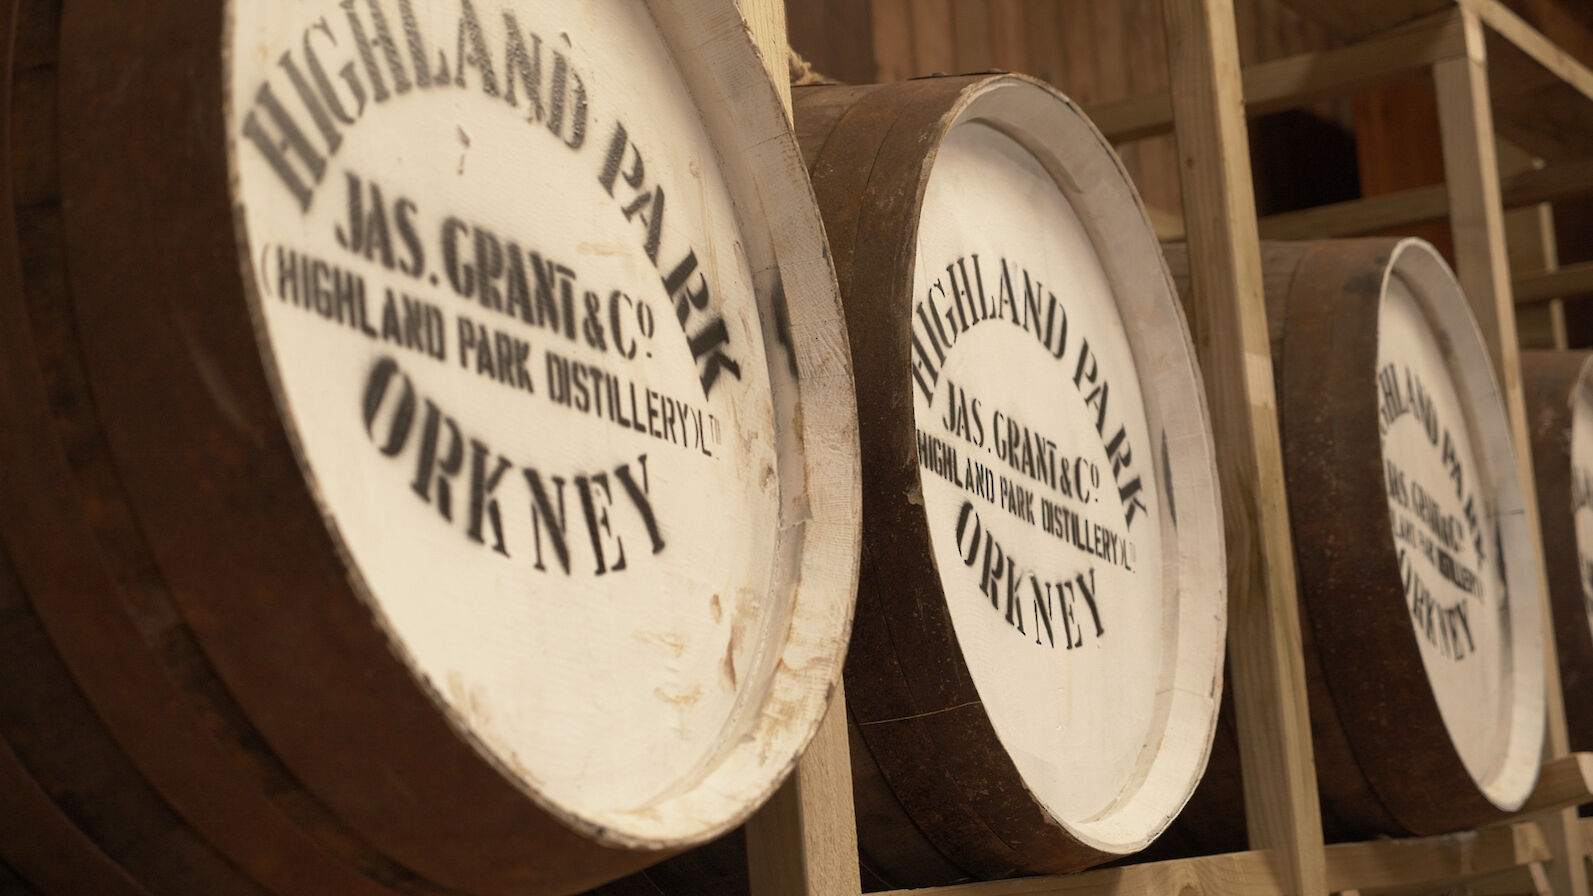 Highland Park whisky barrels, Orkney